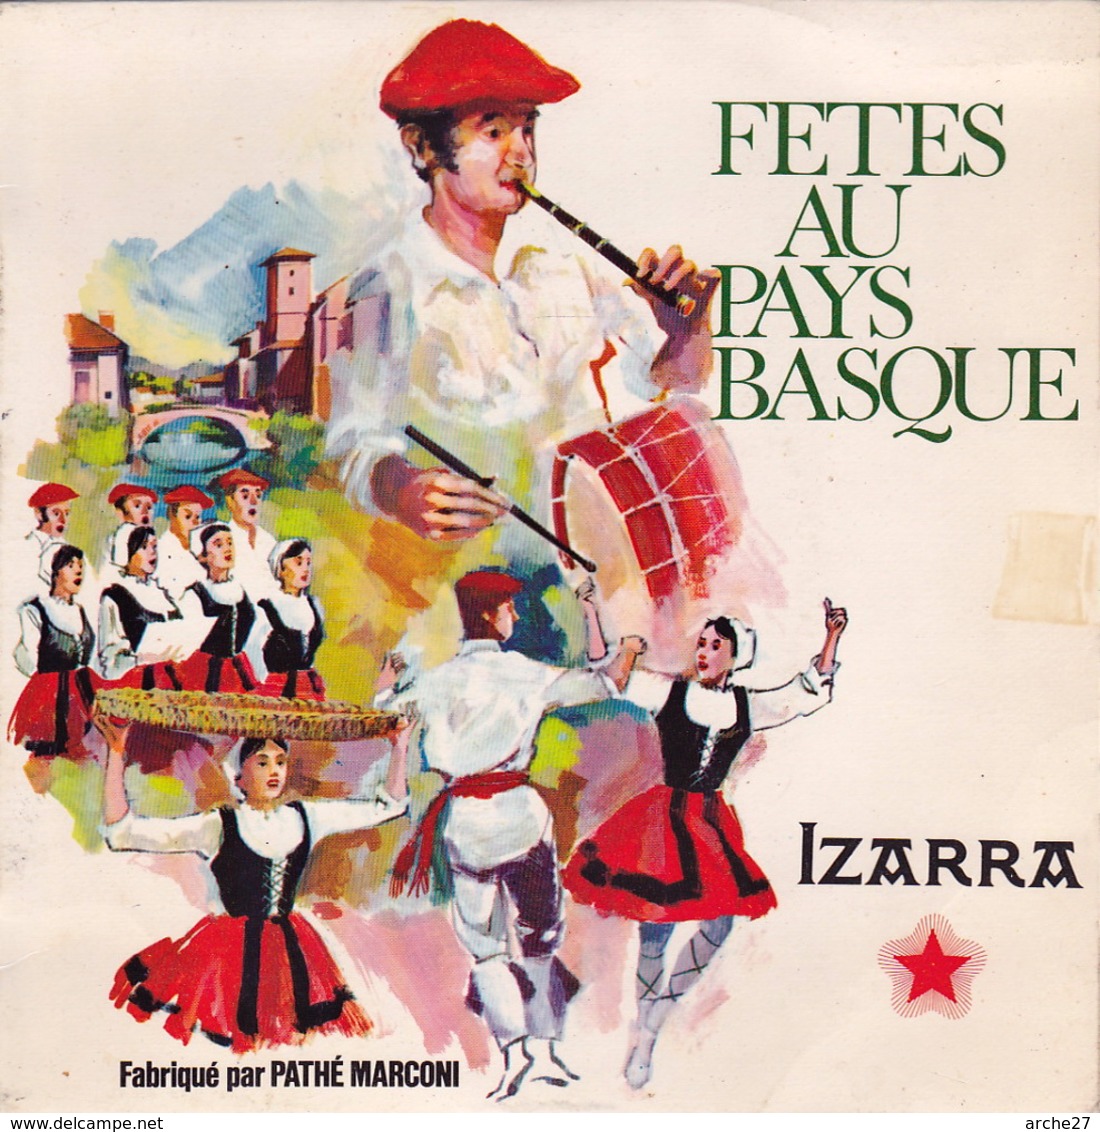 FETES DU PAYS BASQUE - EP - 45T - Disque Vinyle - Izarra - 68041 - World Music